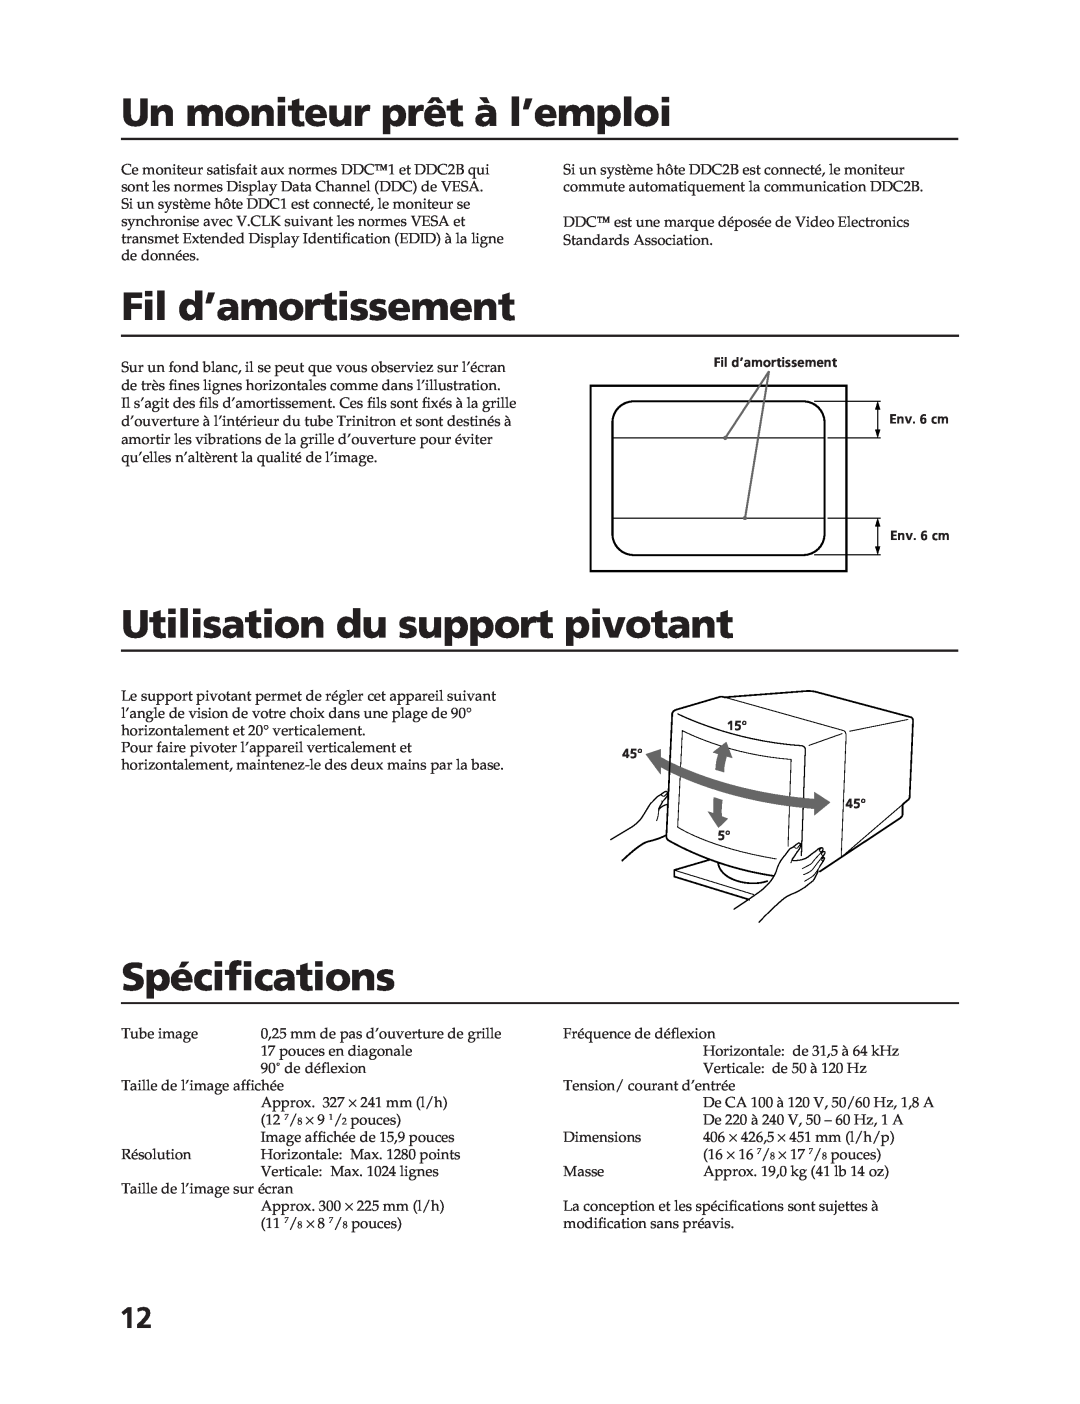 Sony CPD-17F03 manual Un moniteur prêt à l’emploi, Fil d’amortissement, Utilisation du support pivotant, Spécifications 